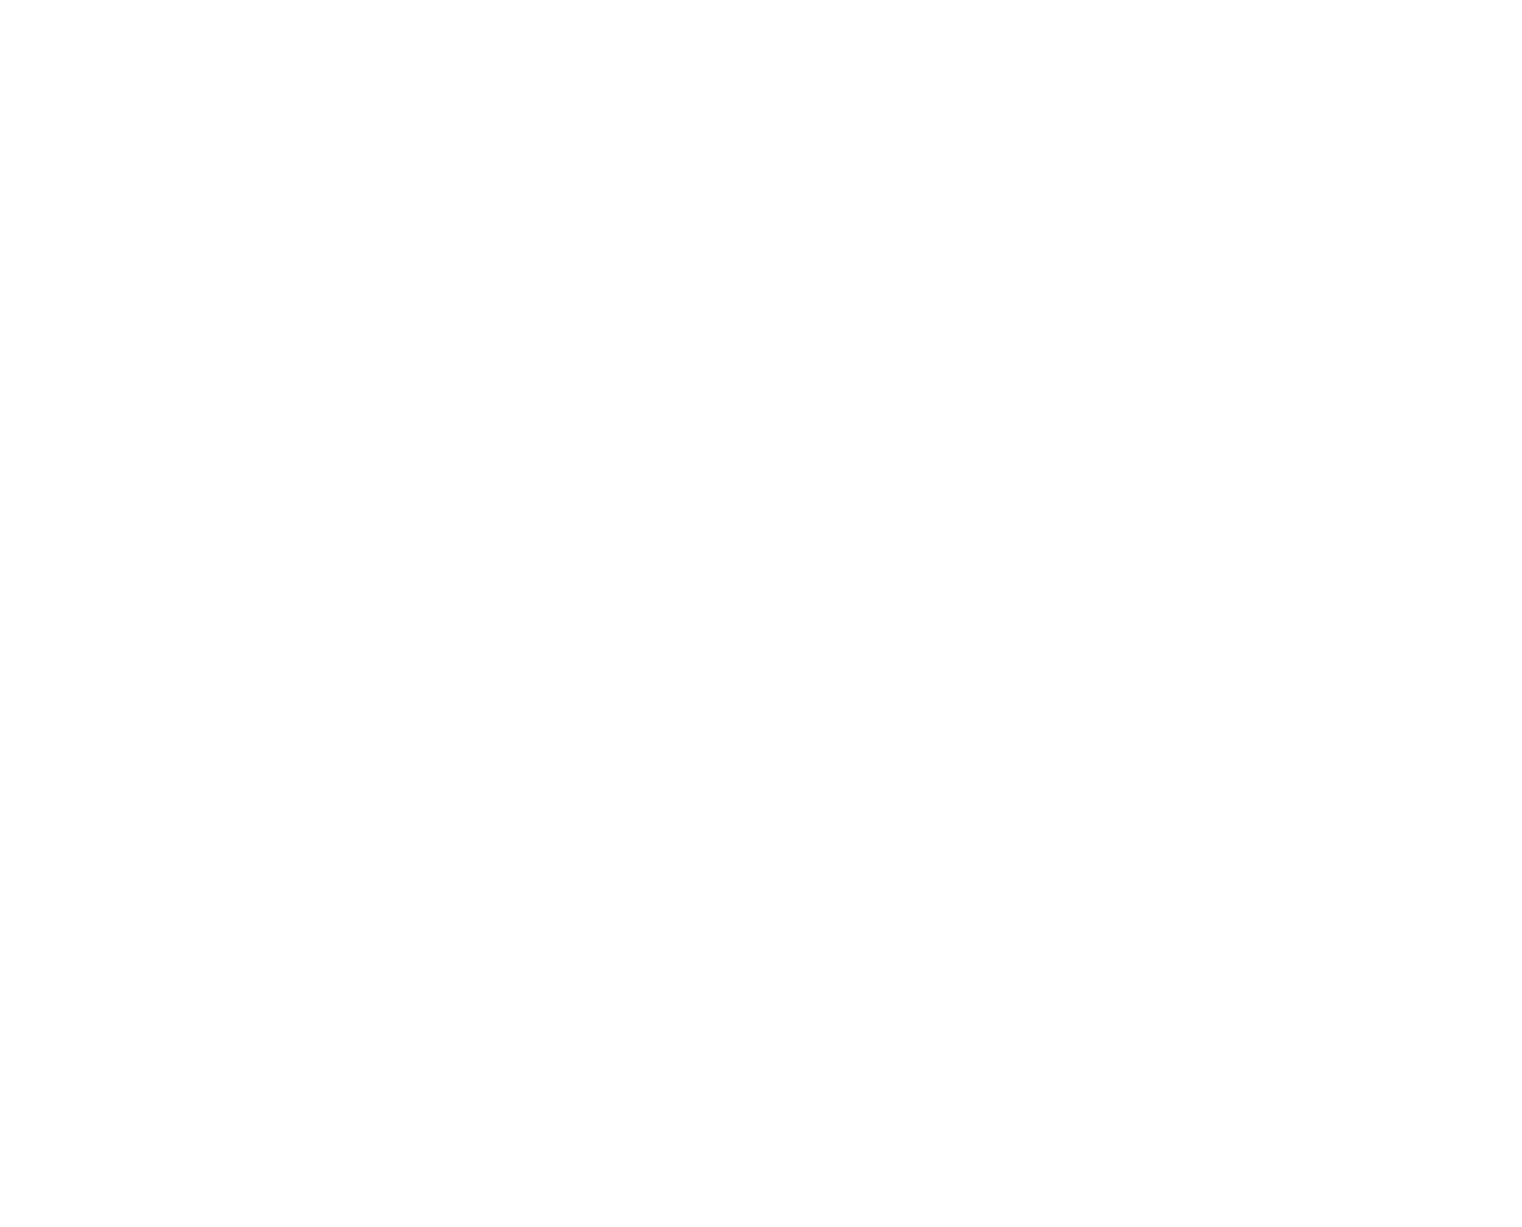 Olvi plc logo for dark backgrounds (transparent PNG)